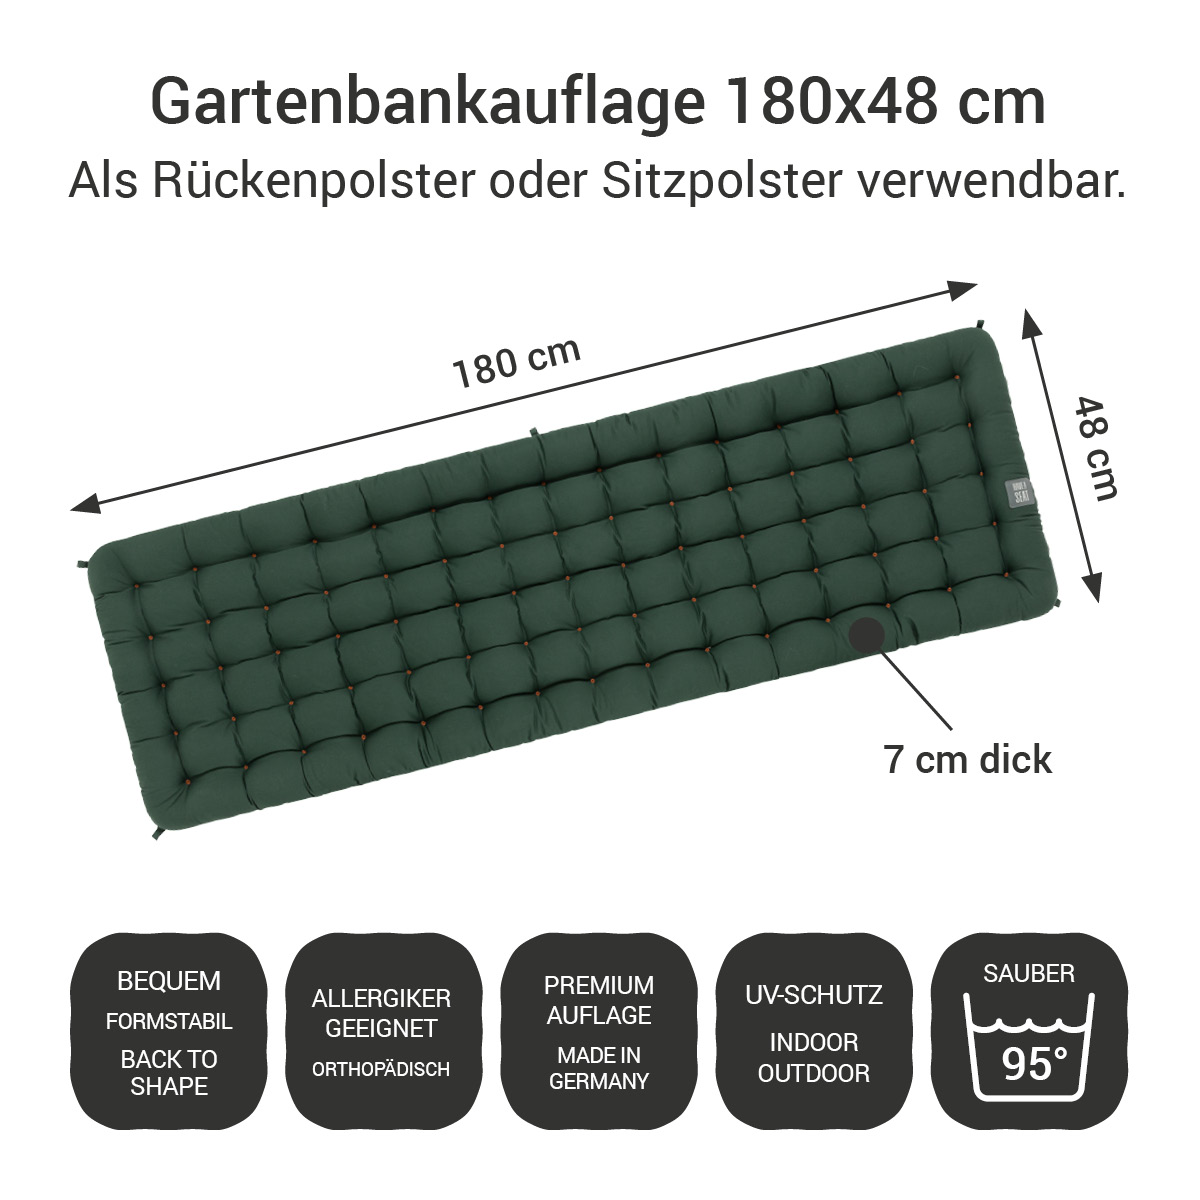 Gartenbank Auflagen (2tlg.) dunkelgrün 180x48 cm / 180 x 50 cm | bequem & orthopädisch, komplett im Ganzen waschbar bis 95°C, wetterfest, Made in Germany